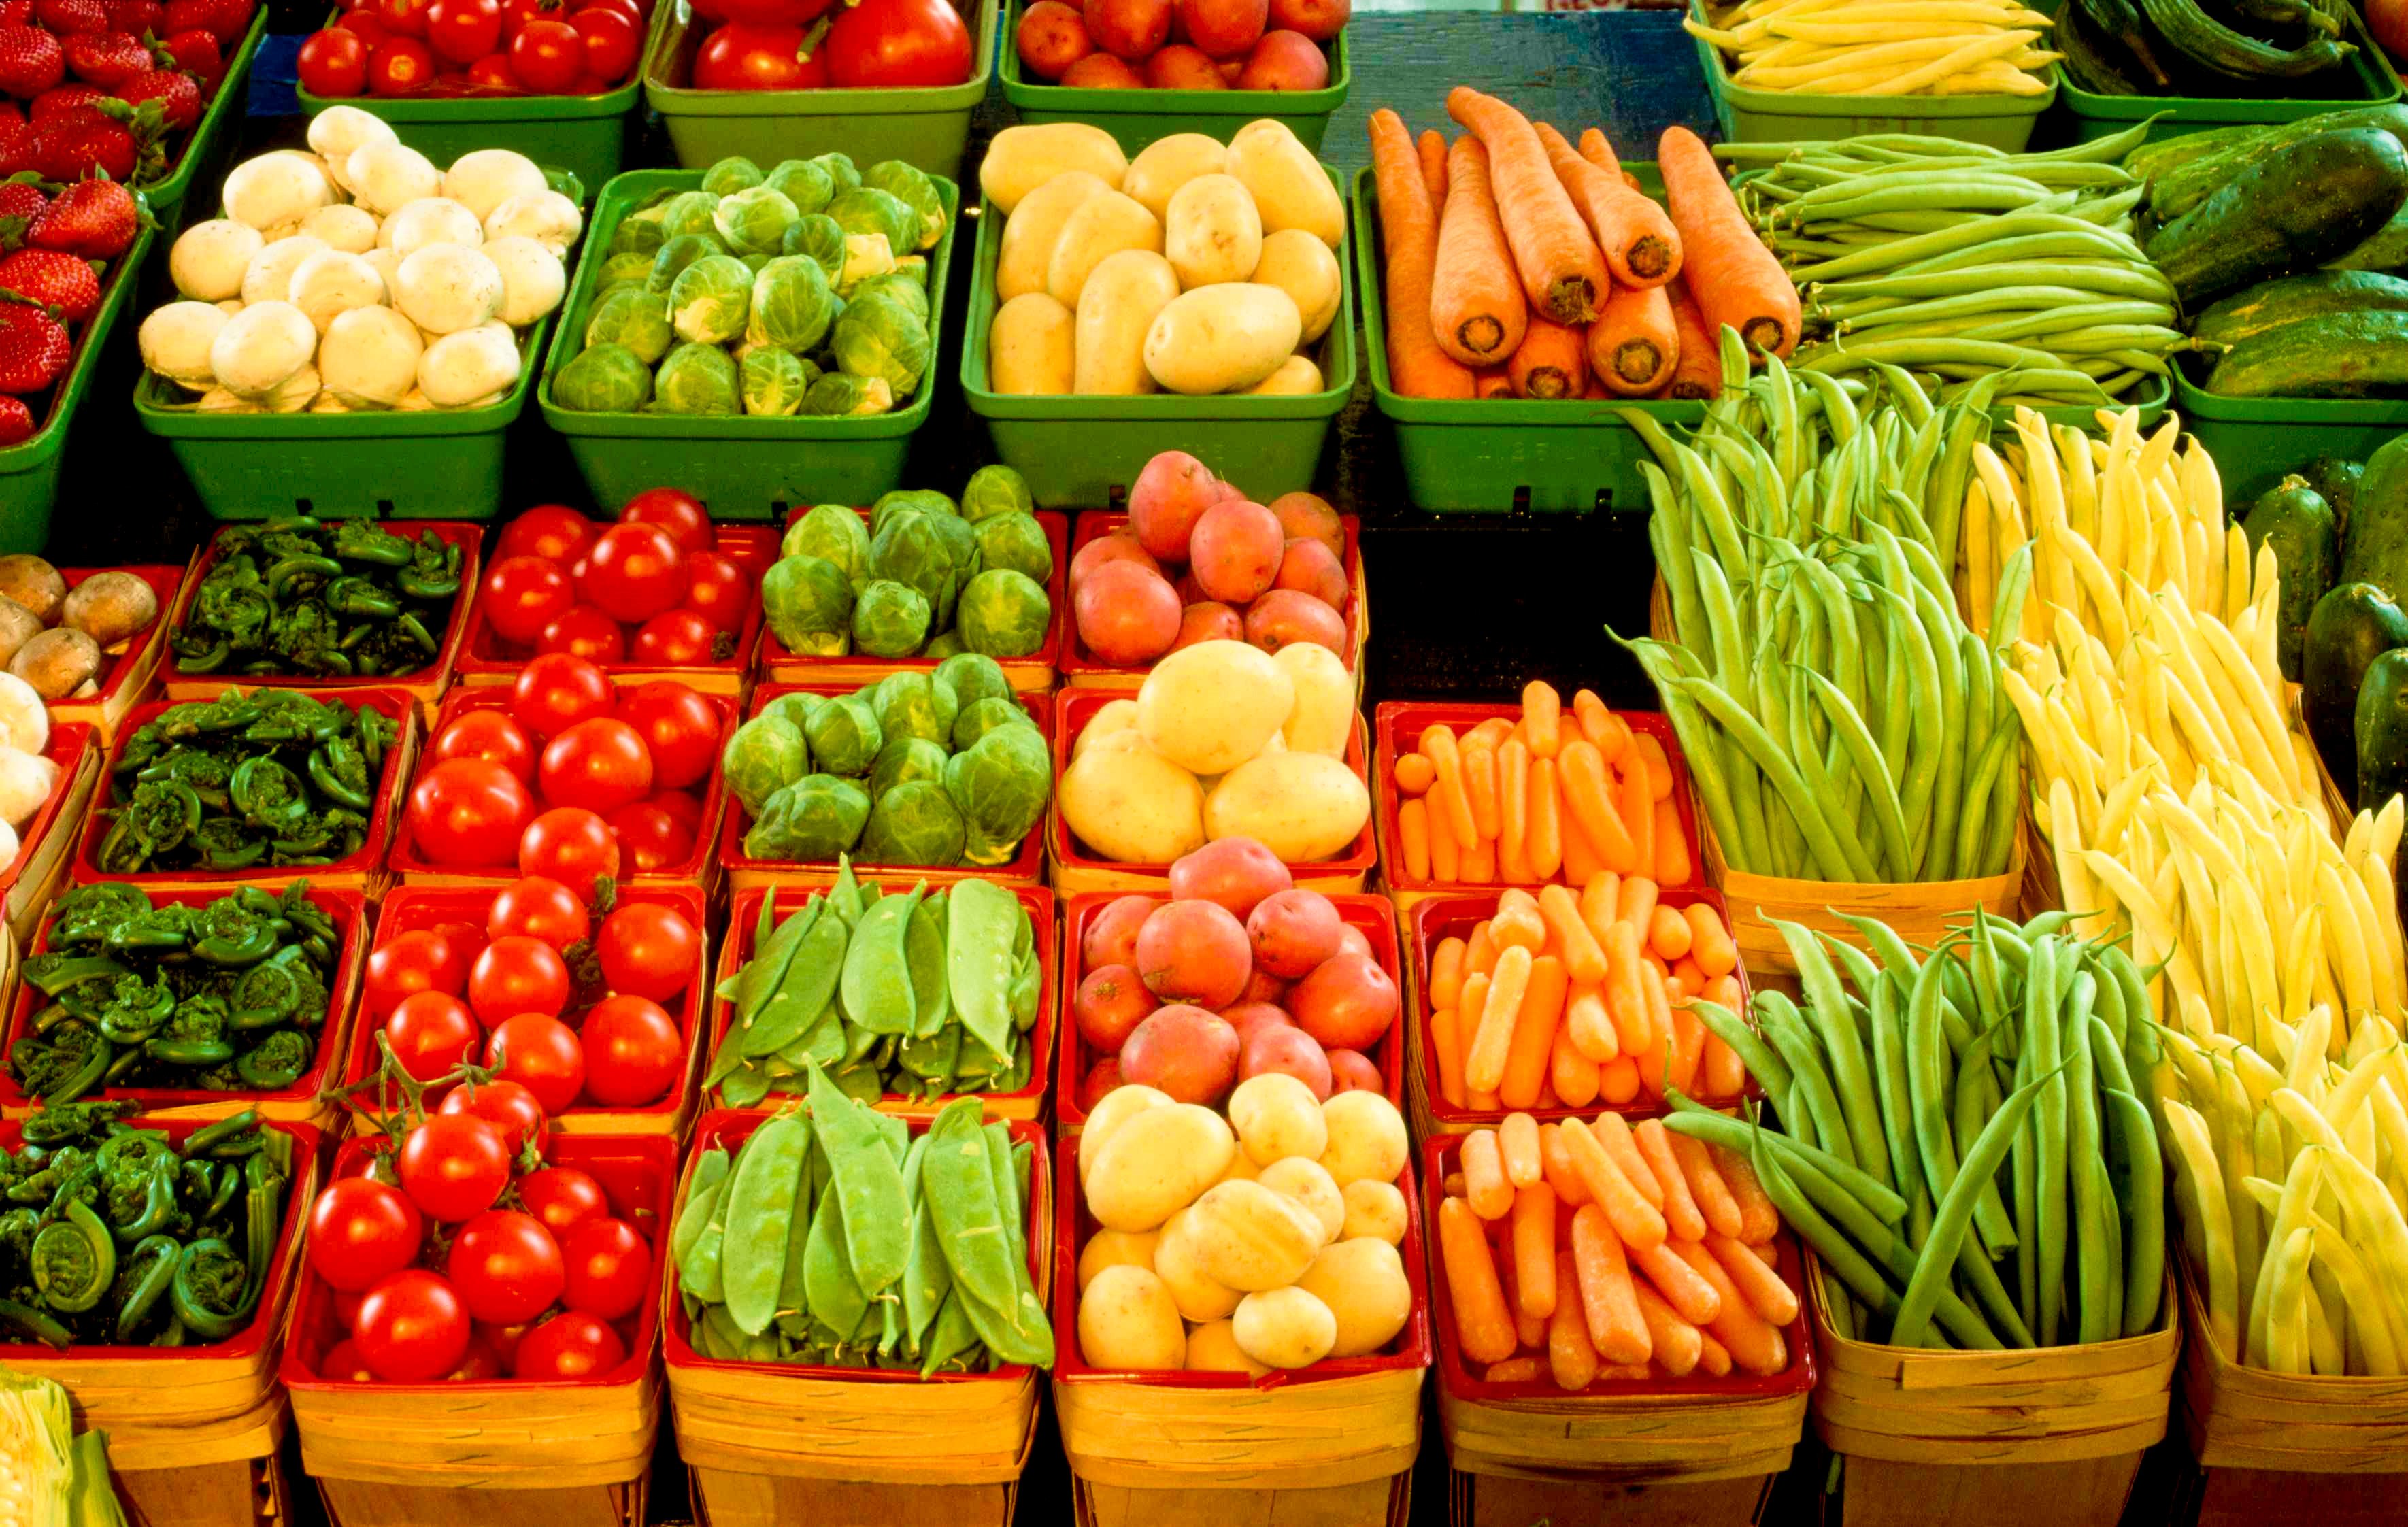 Производителей свежих овощей. Ассортимент овощей. Овощи на прилавке. Выкладка овощей. Рынок овощей и фруктов.